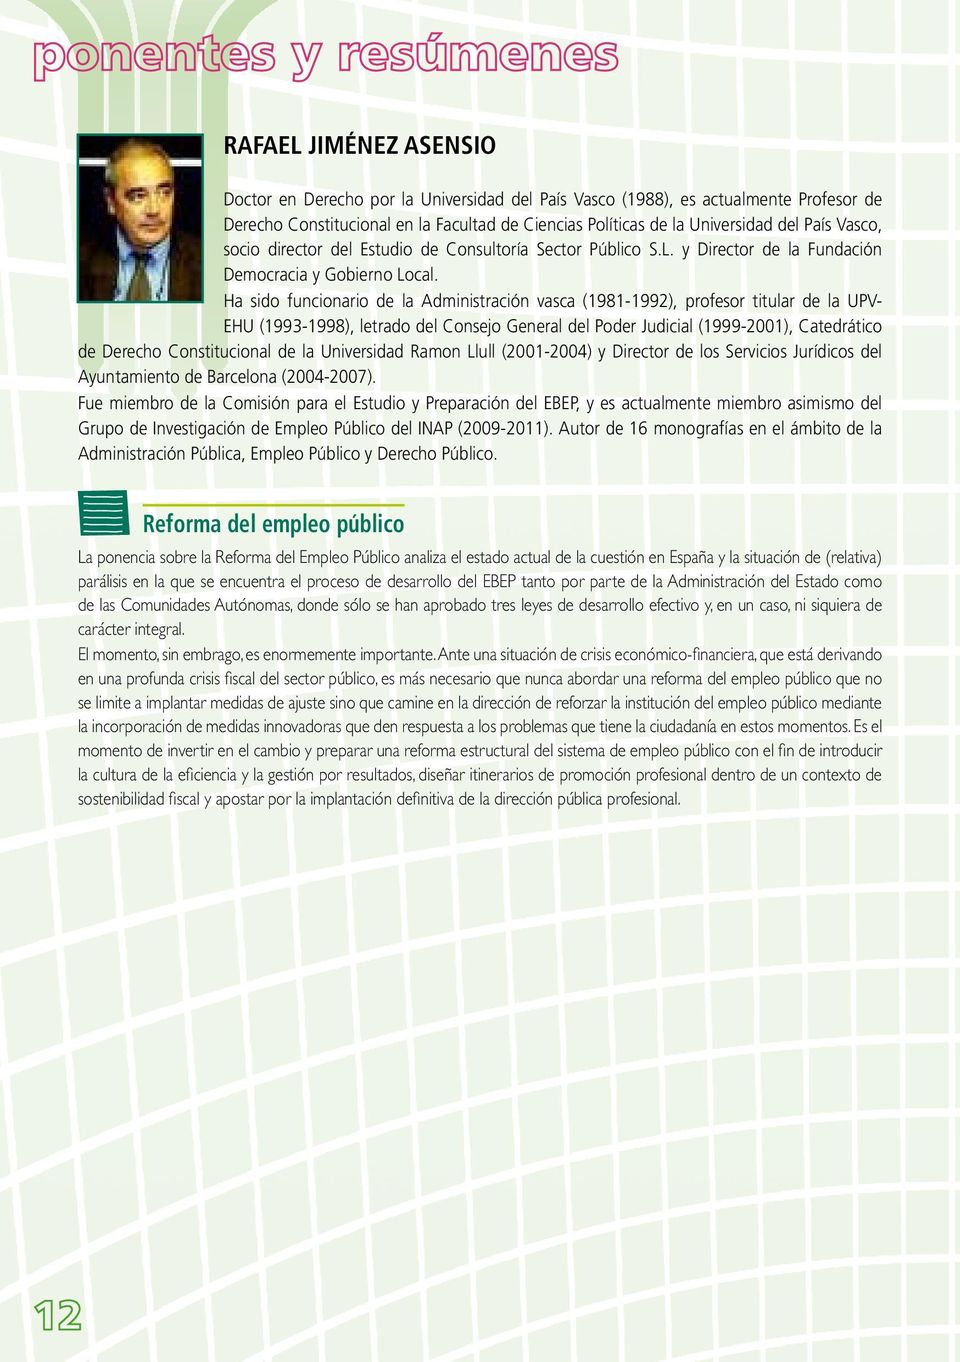 Ha sido funcionario de la Administración vasca (1981-1992), profesor titular de la UPV- EHU (1993-1998), letrado del Consejo General del Poder Judicial (1999-2001), Catedrático de Derecho